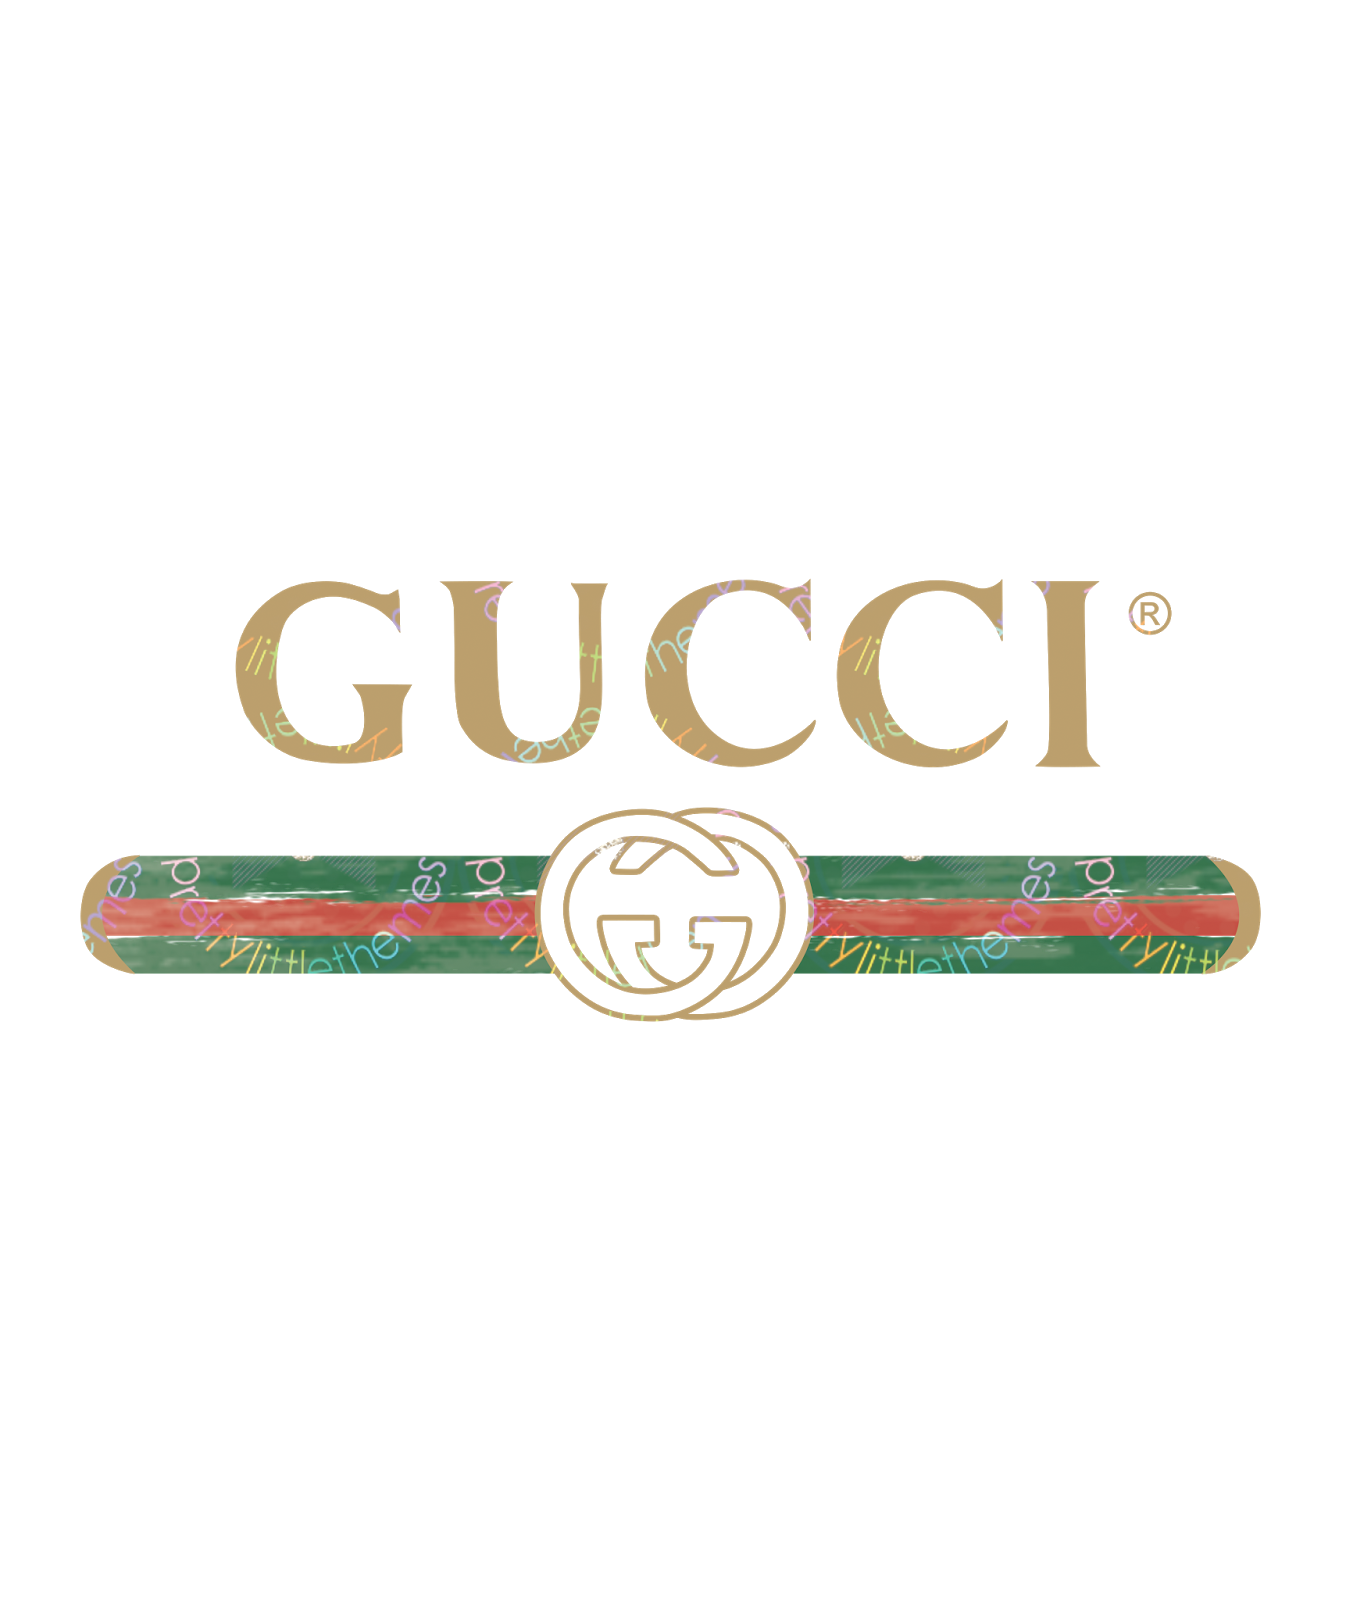 Vintage Gucci Logos - gucci logo vector roblox